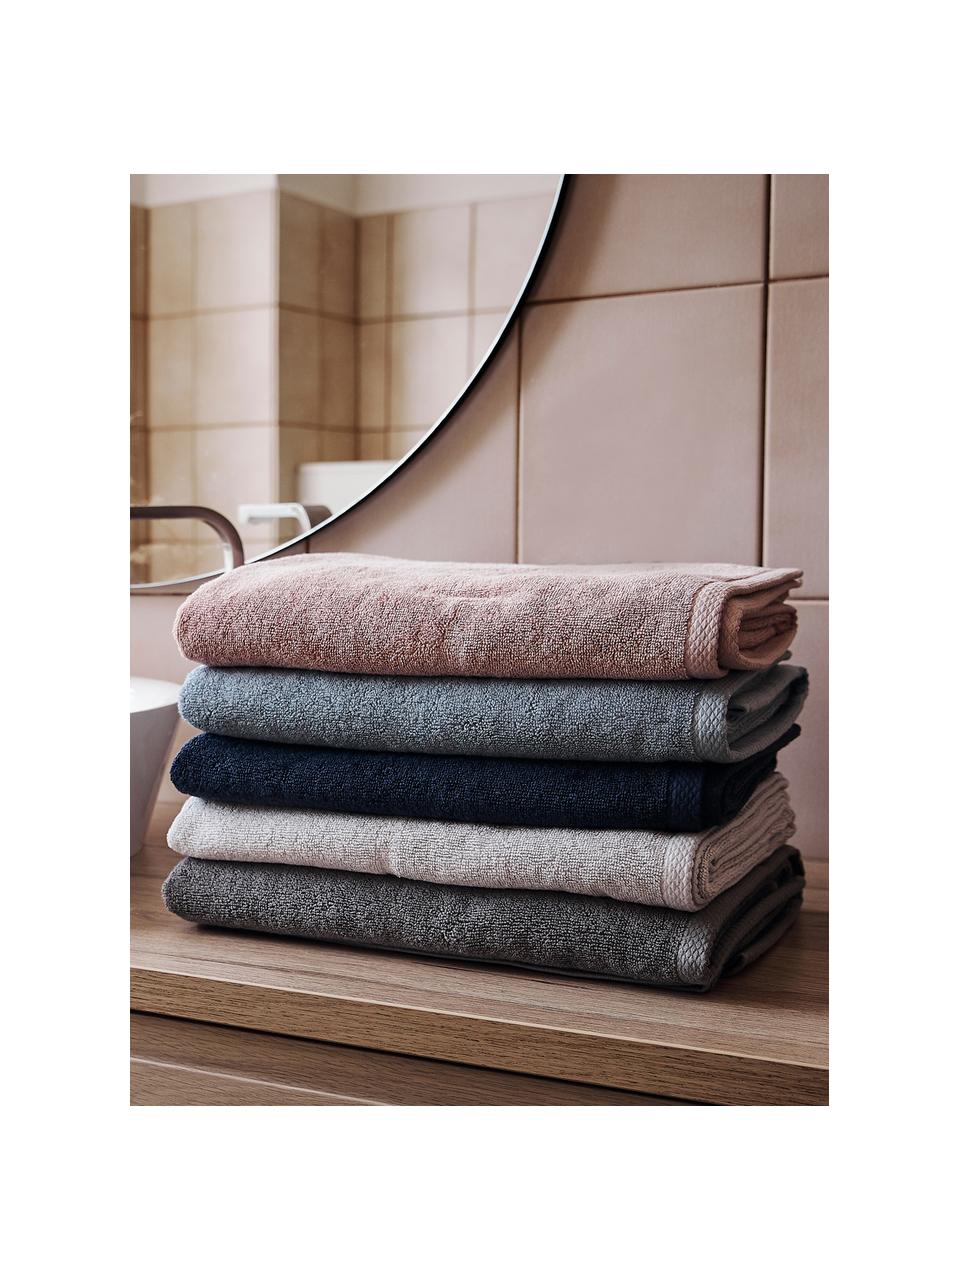 Súprava jednofarebných uterákov Comfort, 3 diely, 100 % bavlna
Stredná gramáž 450 g/m², Svetlosivá, Súprava s rôznymi veľkosťami